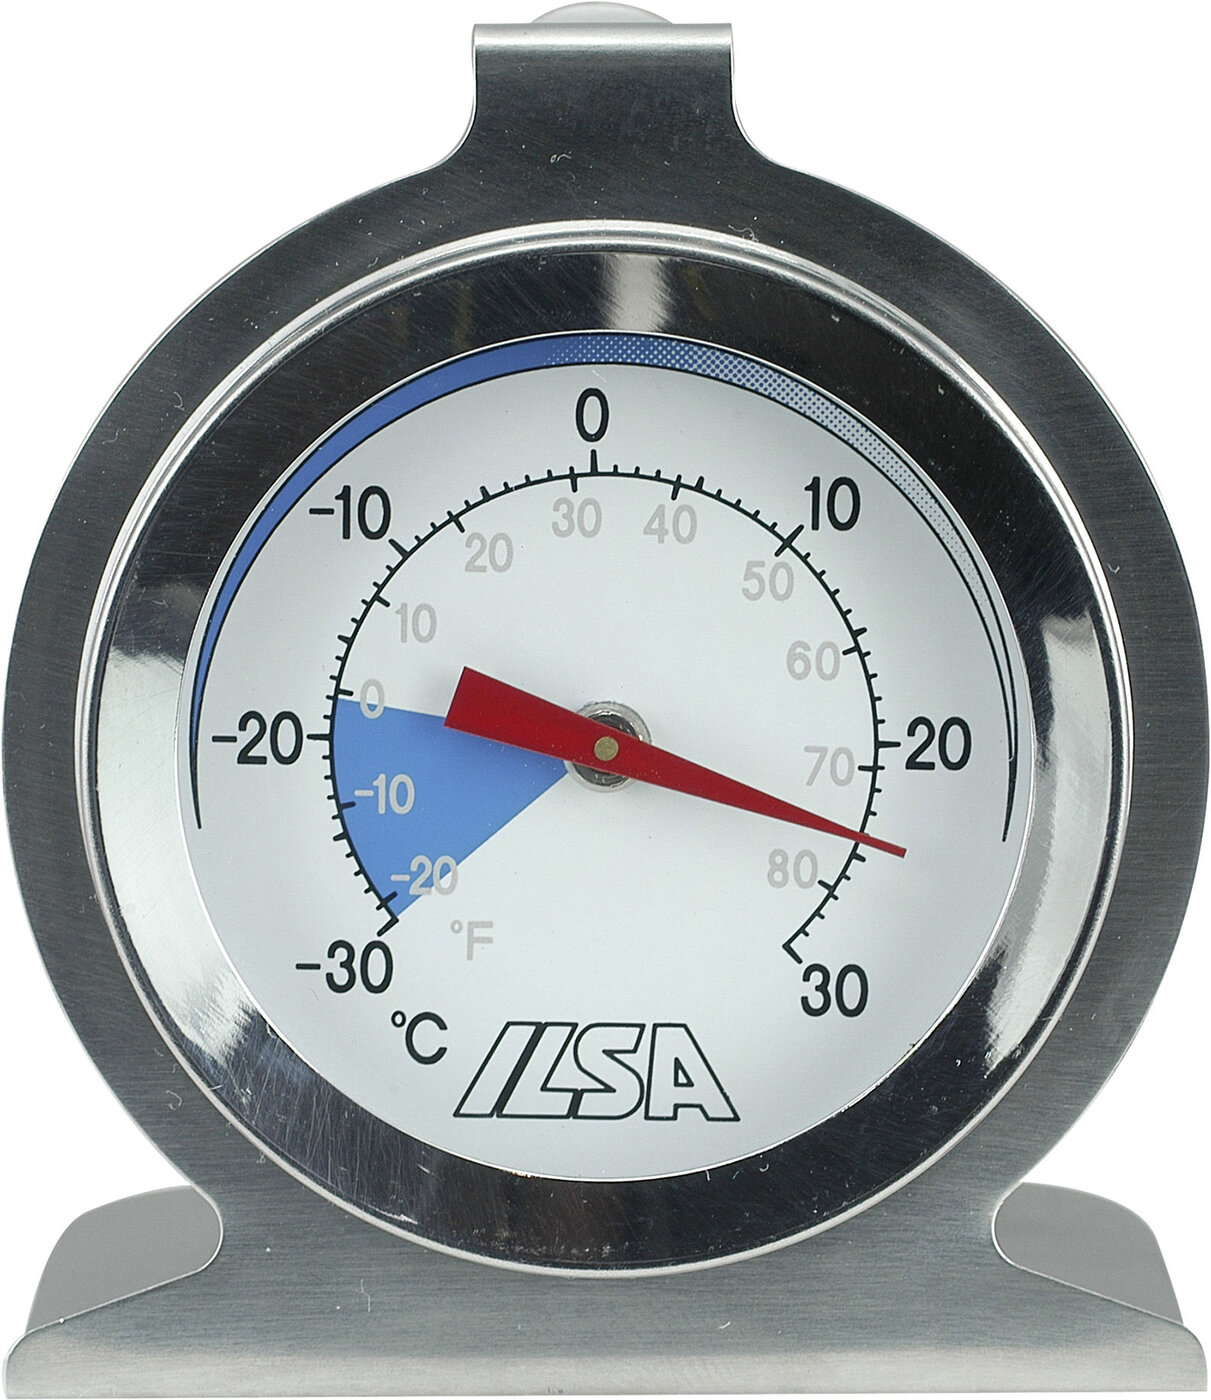 Термометр для холодильника Ilsa -30+30C, 61х35х70мм, сталь